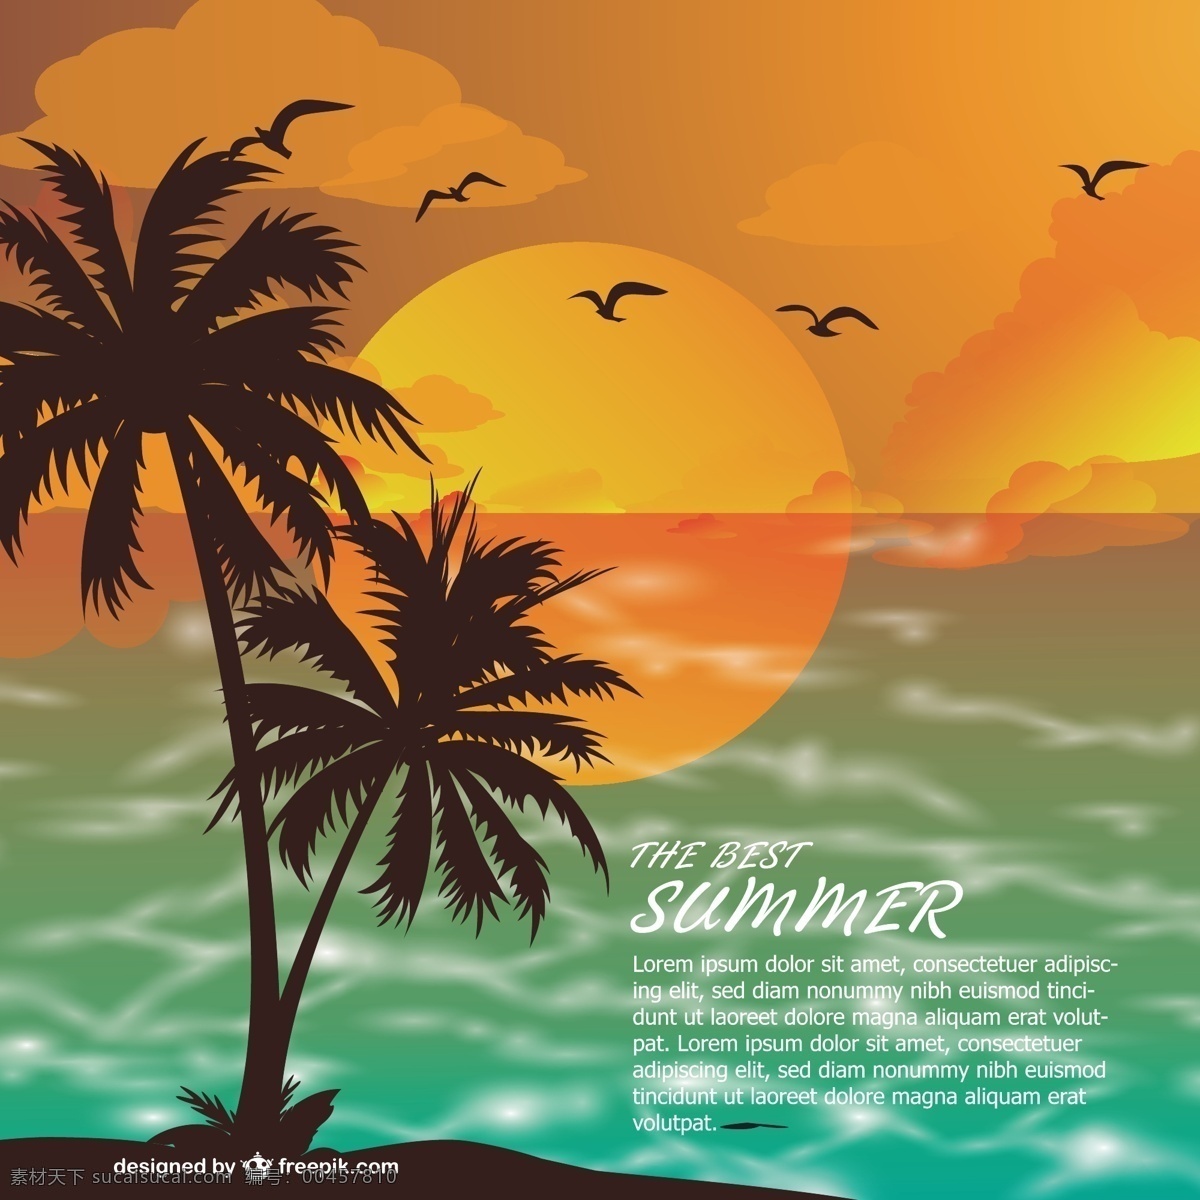 夕阳 背景 下 夏日 海滩 树 夏天 太阳 自然 海洋 模板 壁纸 鸟类 布局 假日 棕榈树 棕榈 日落 橙色